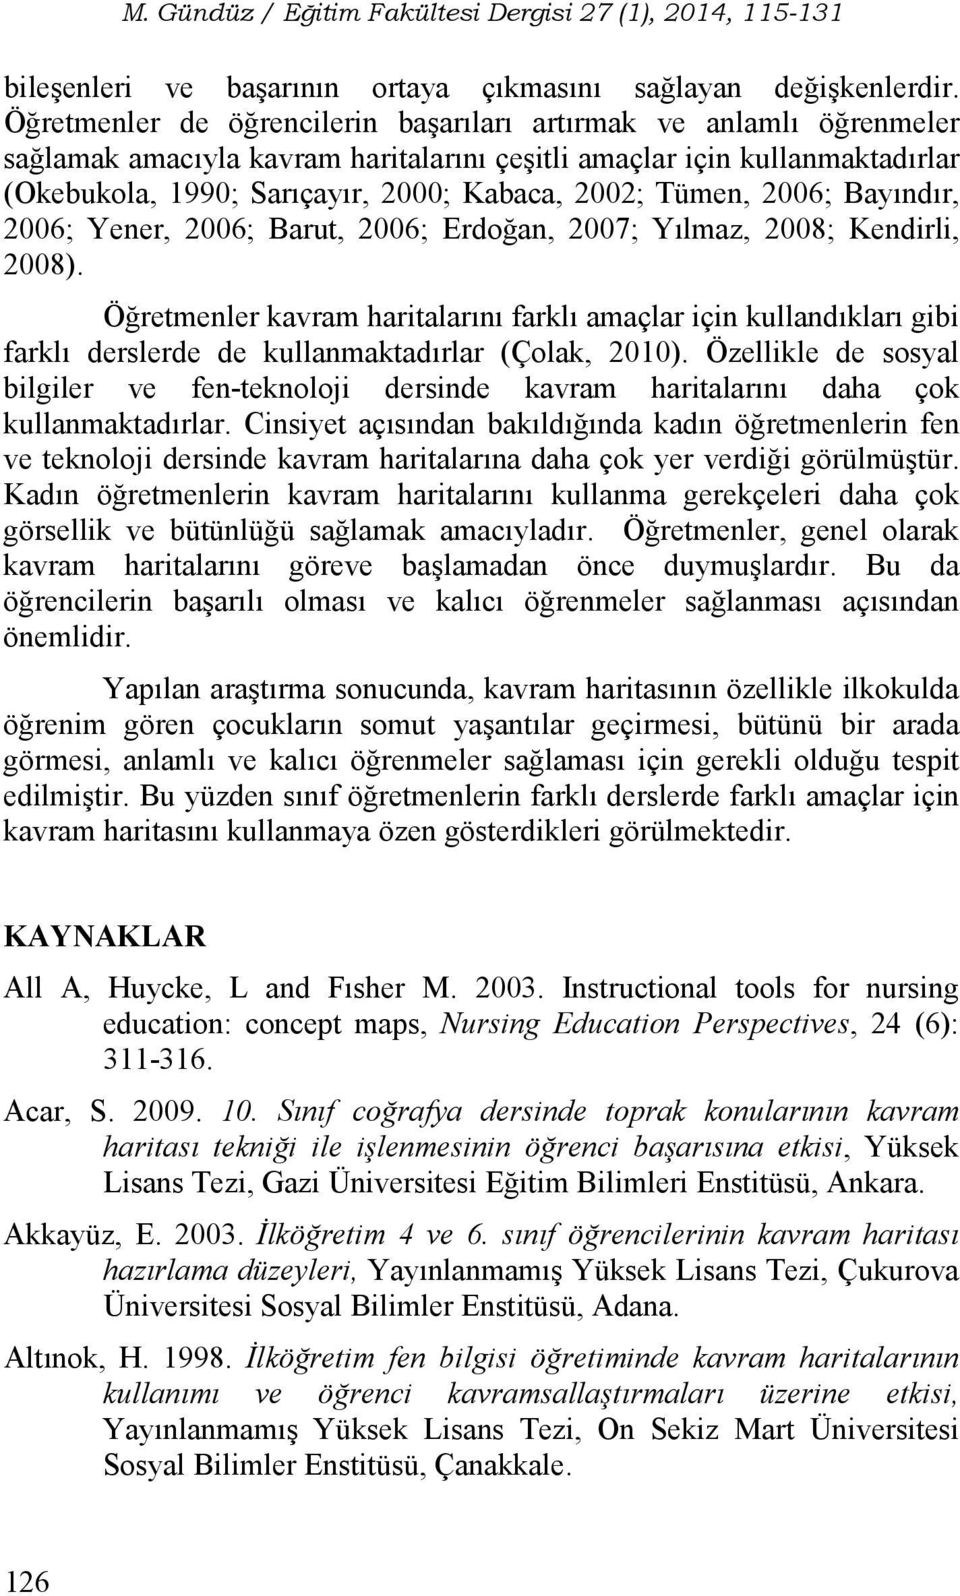 Tümen, 2006; Bayındır, 2006; Yener, 2006; Barut, 2006; Erdoğan, 2007; Yılmaz, 2008; Kendirli, 2008).